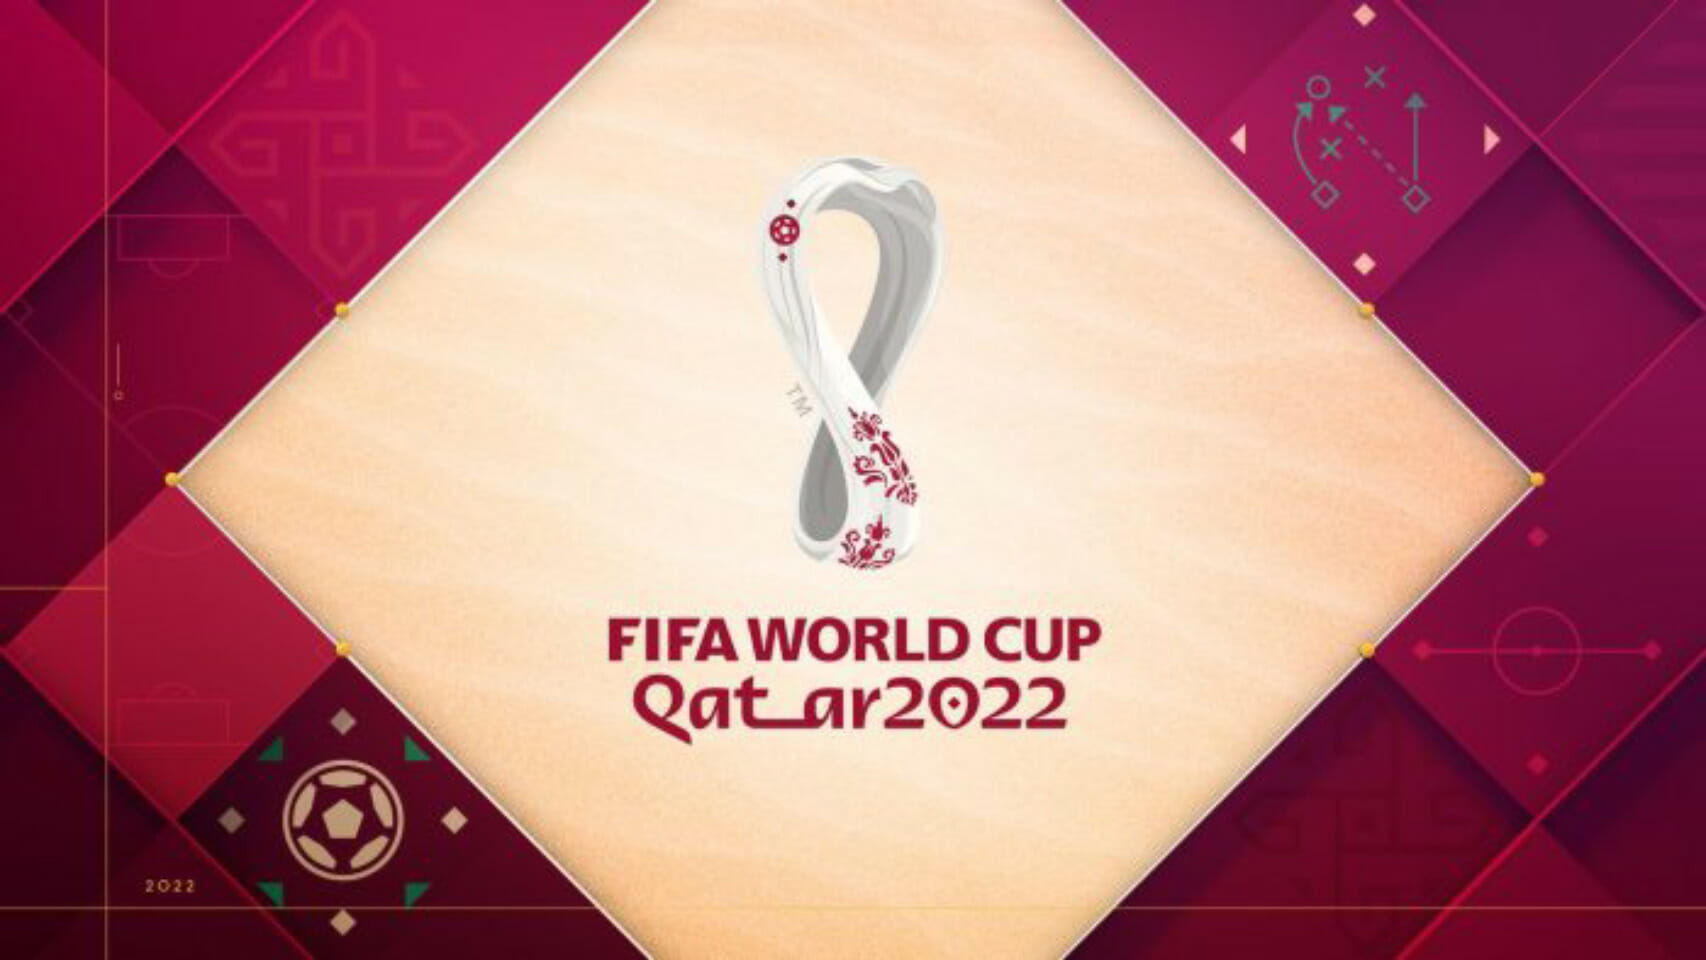 رابط تحميل تطبيق قدام giddam للأندرويد والآيفون لحجز تذاكر مباريات المنتخب السعودي في كأس العالم